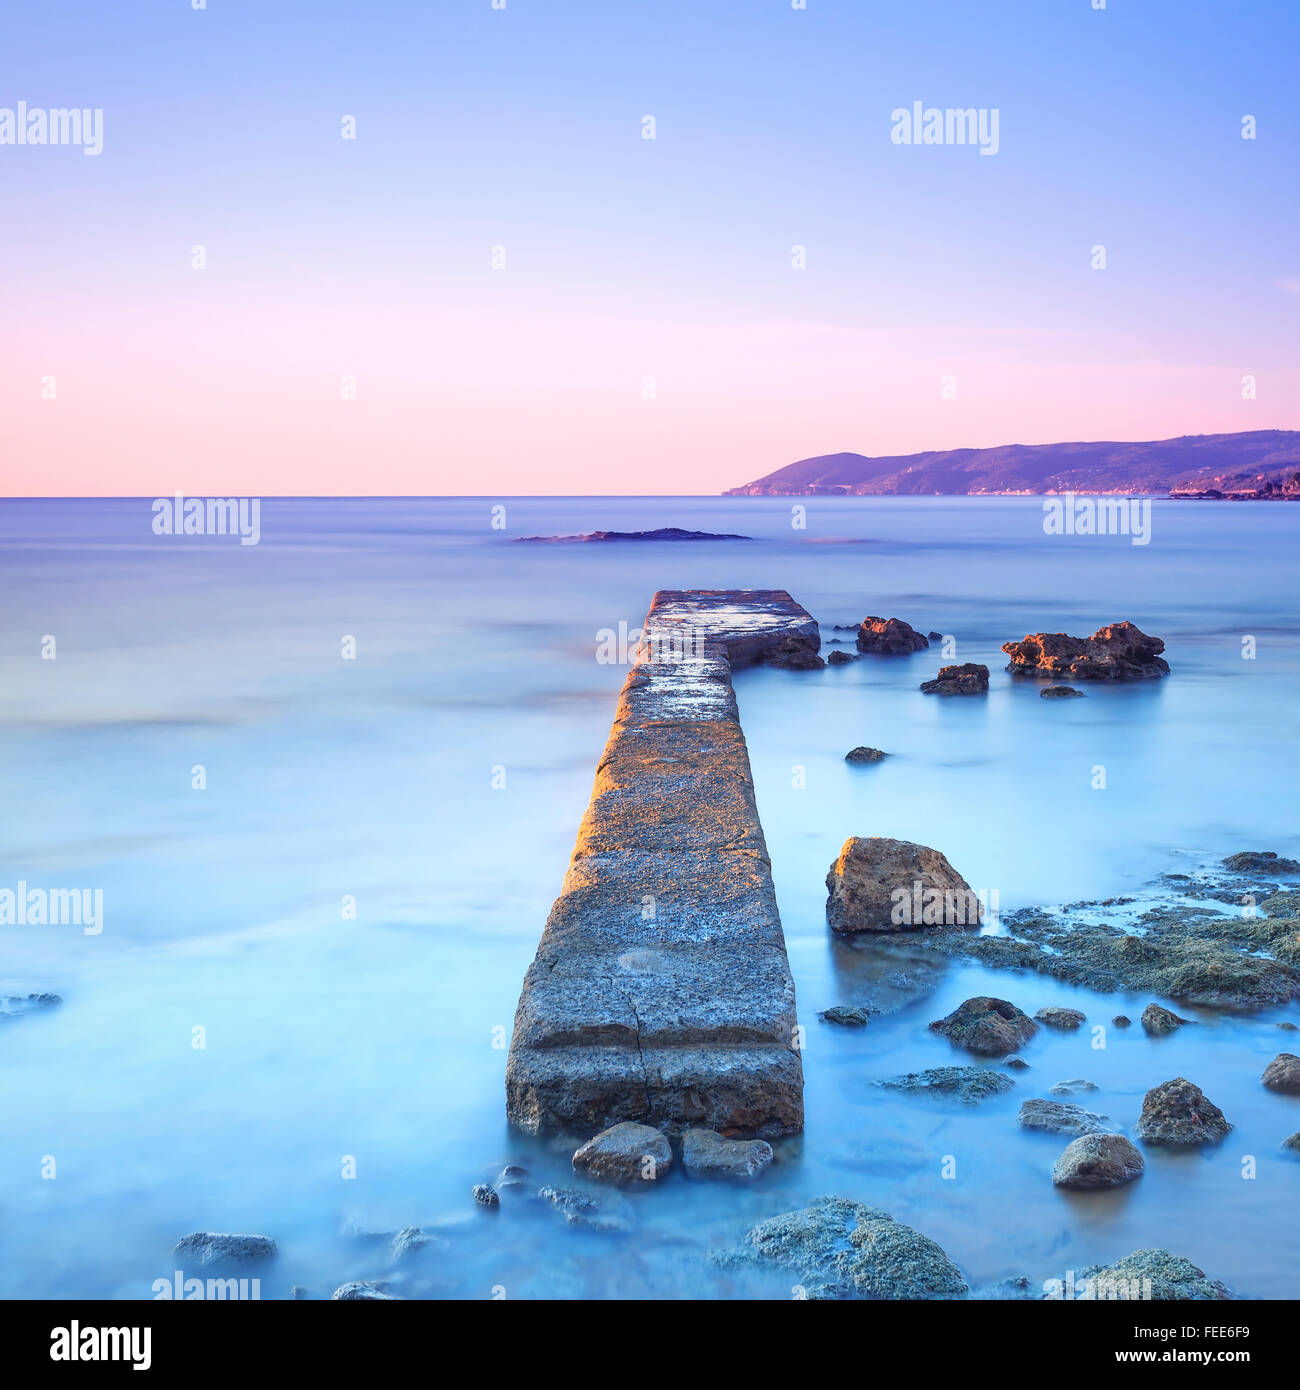 Molo di cemento o un pontile e scogli su un mare blu. Colline sullo sfondo. Fotografie con lunghi tempi di esposizione. Foto Stock